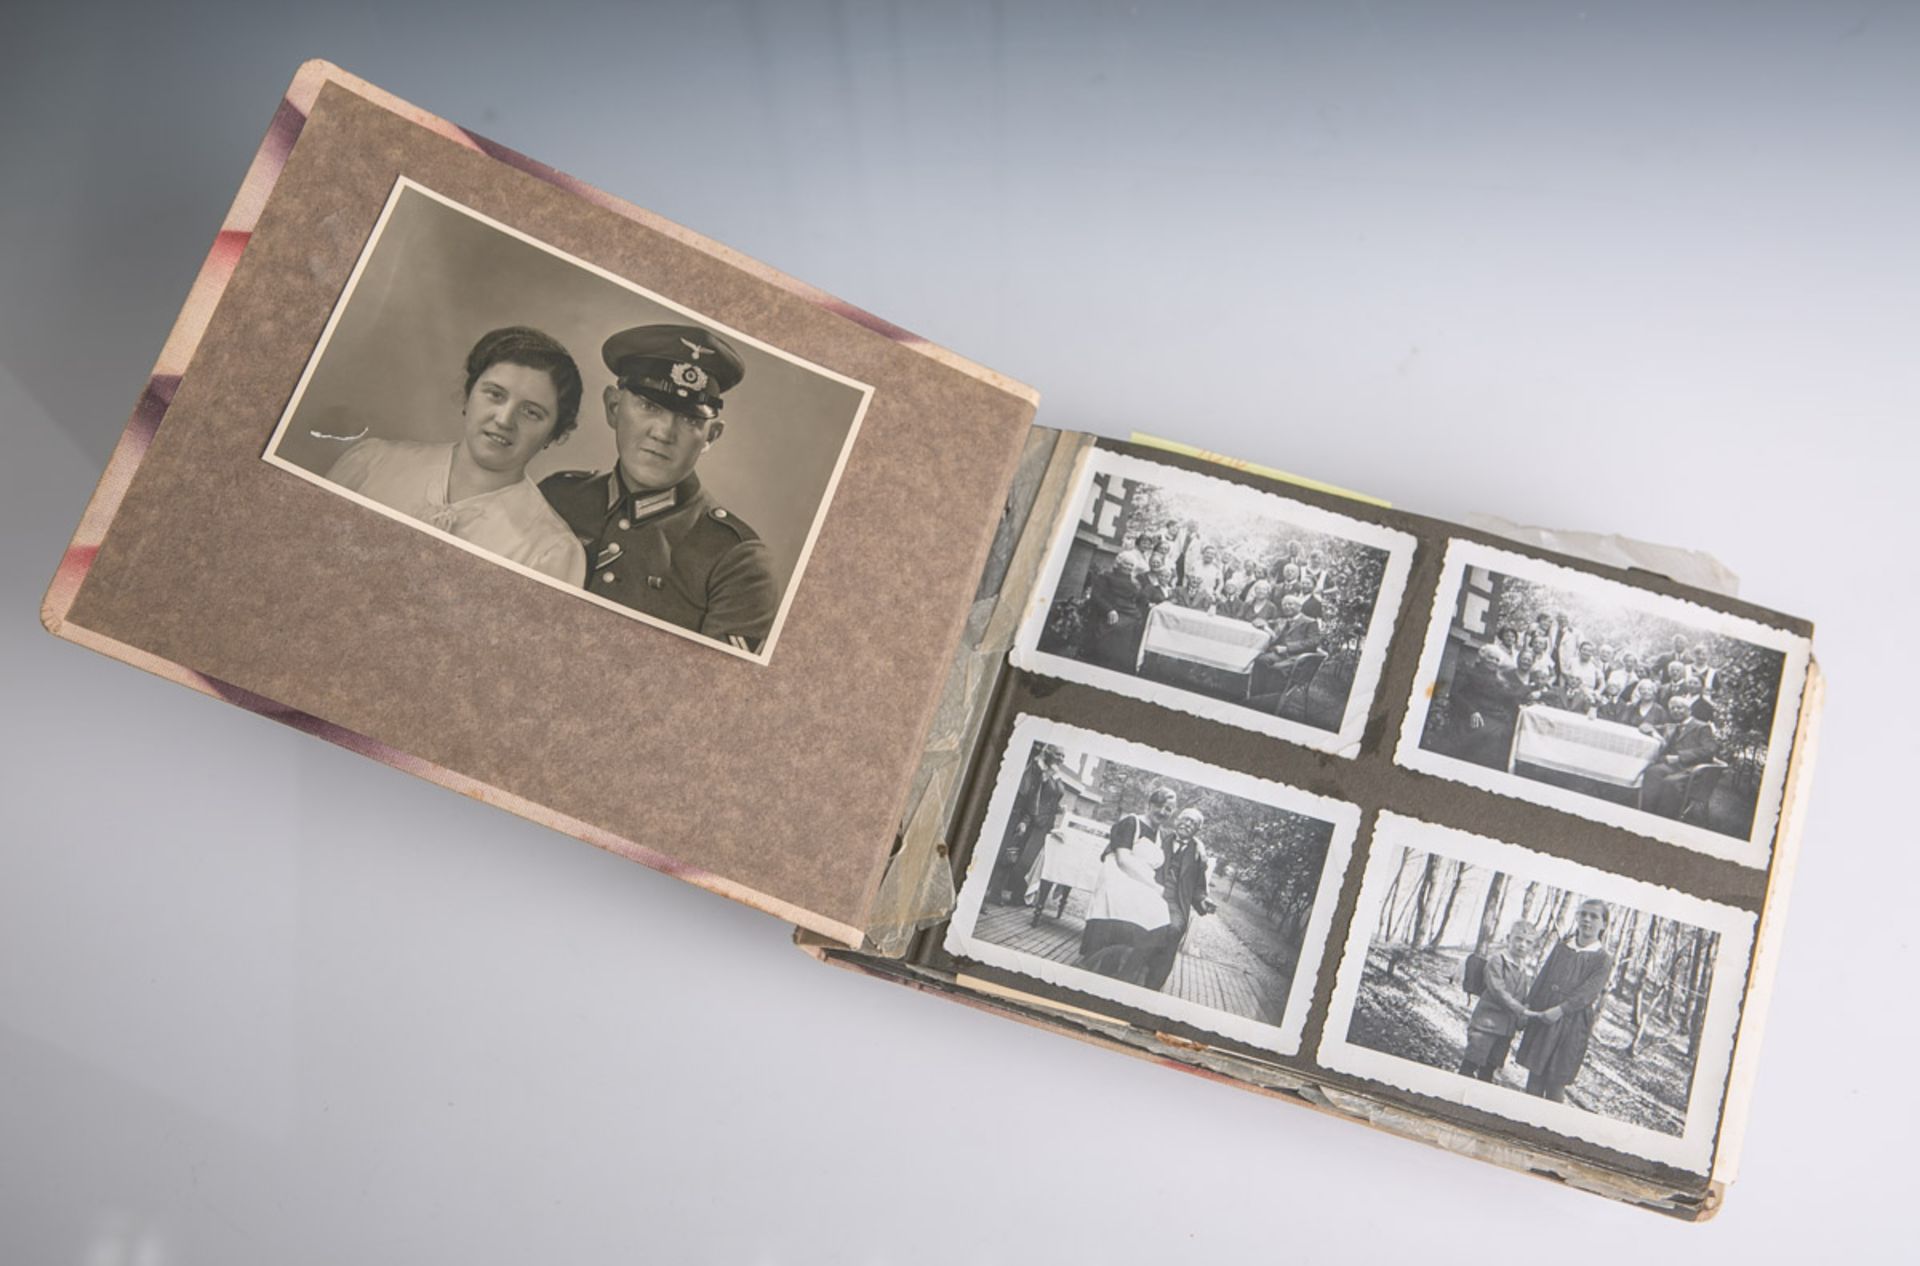 Privates Fotoalbum (2. WK), Drittes Reich, teils private Aufnahmen, großteils militärische